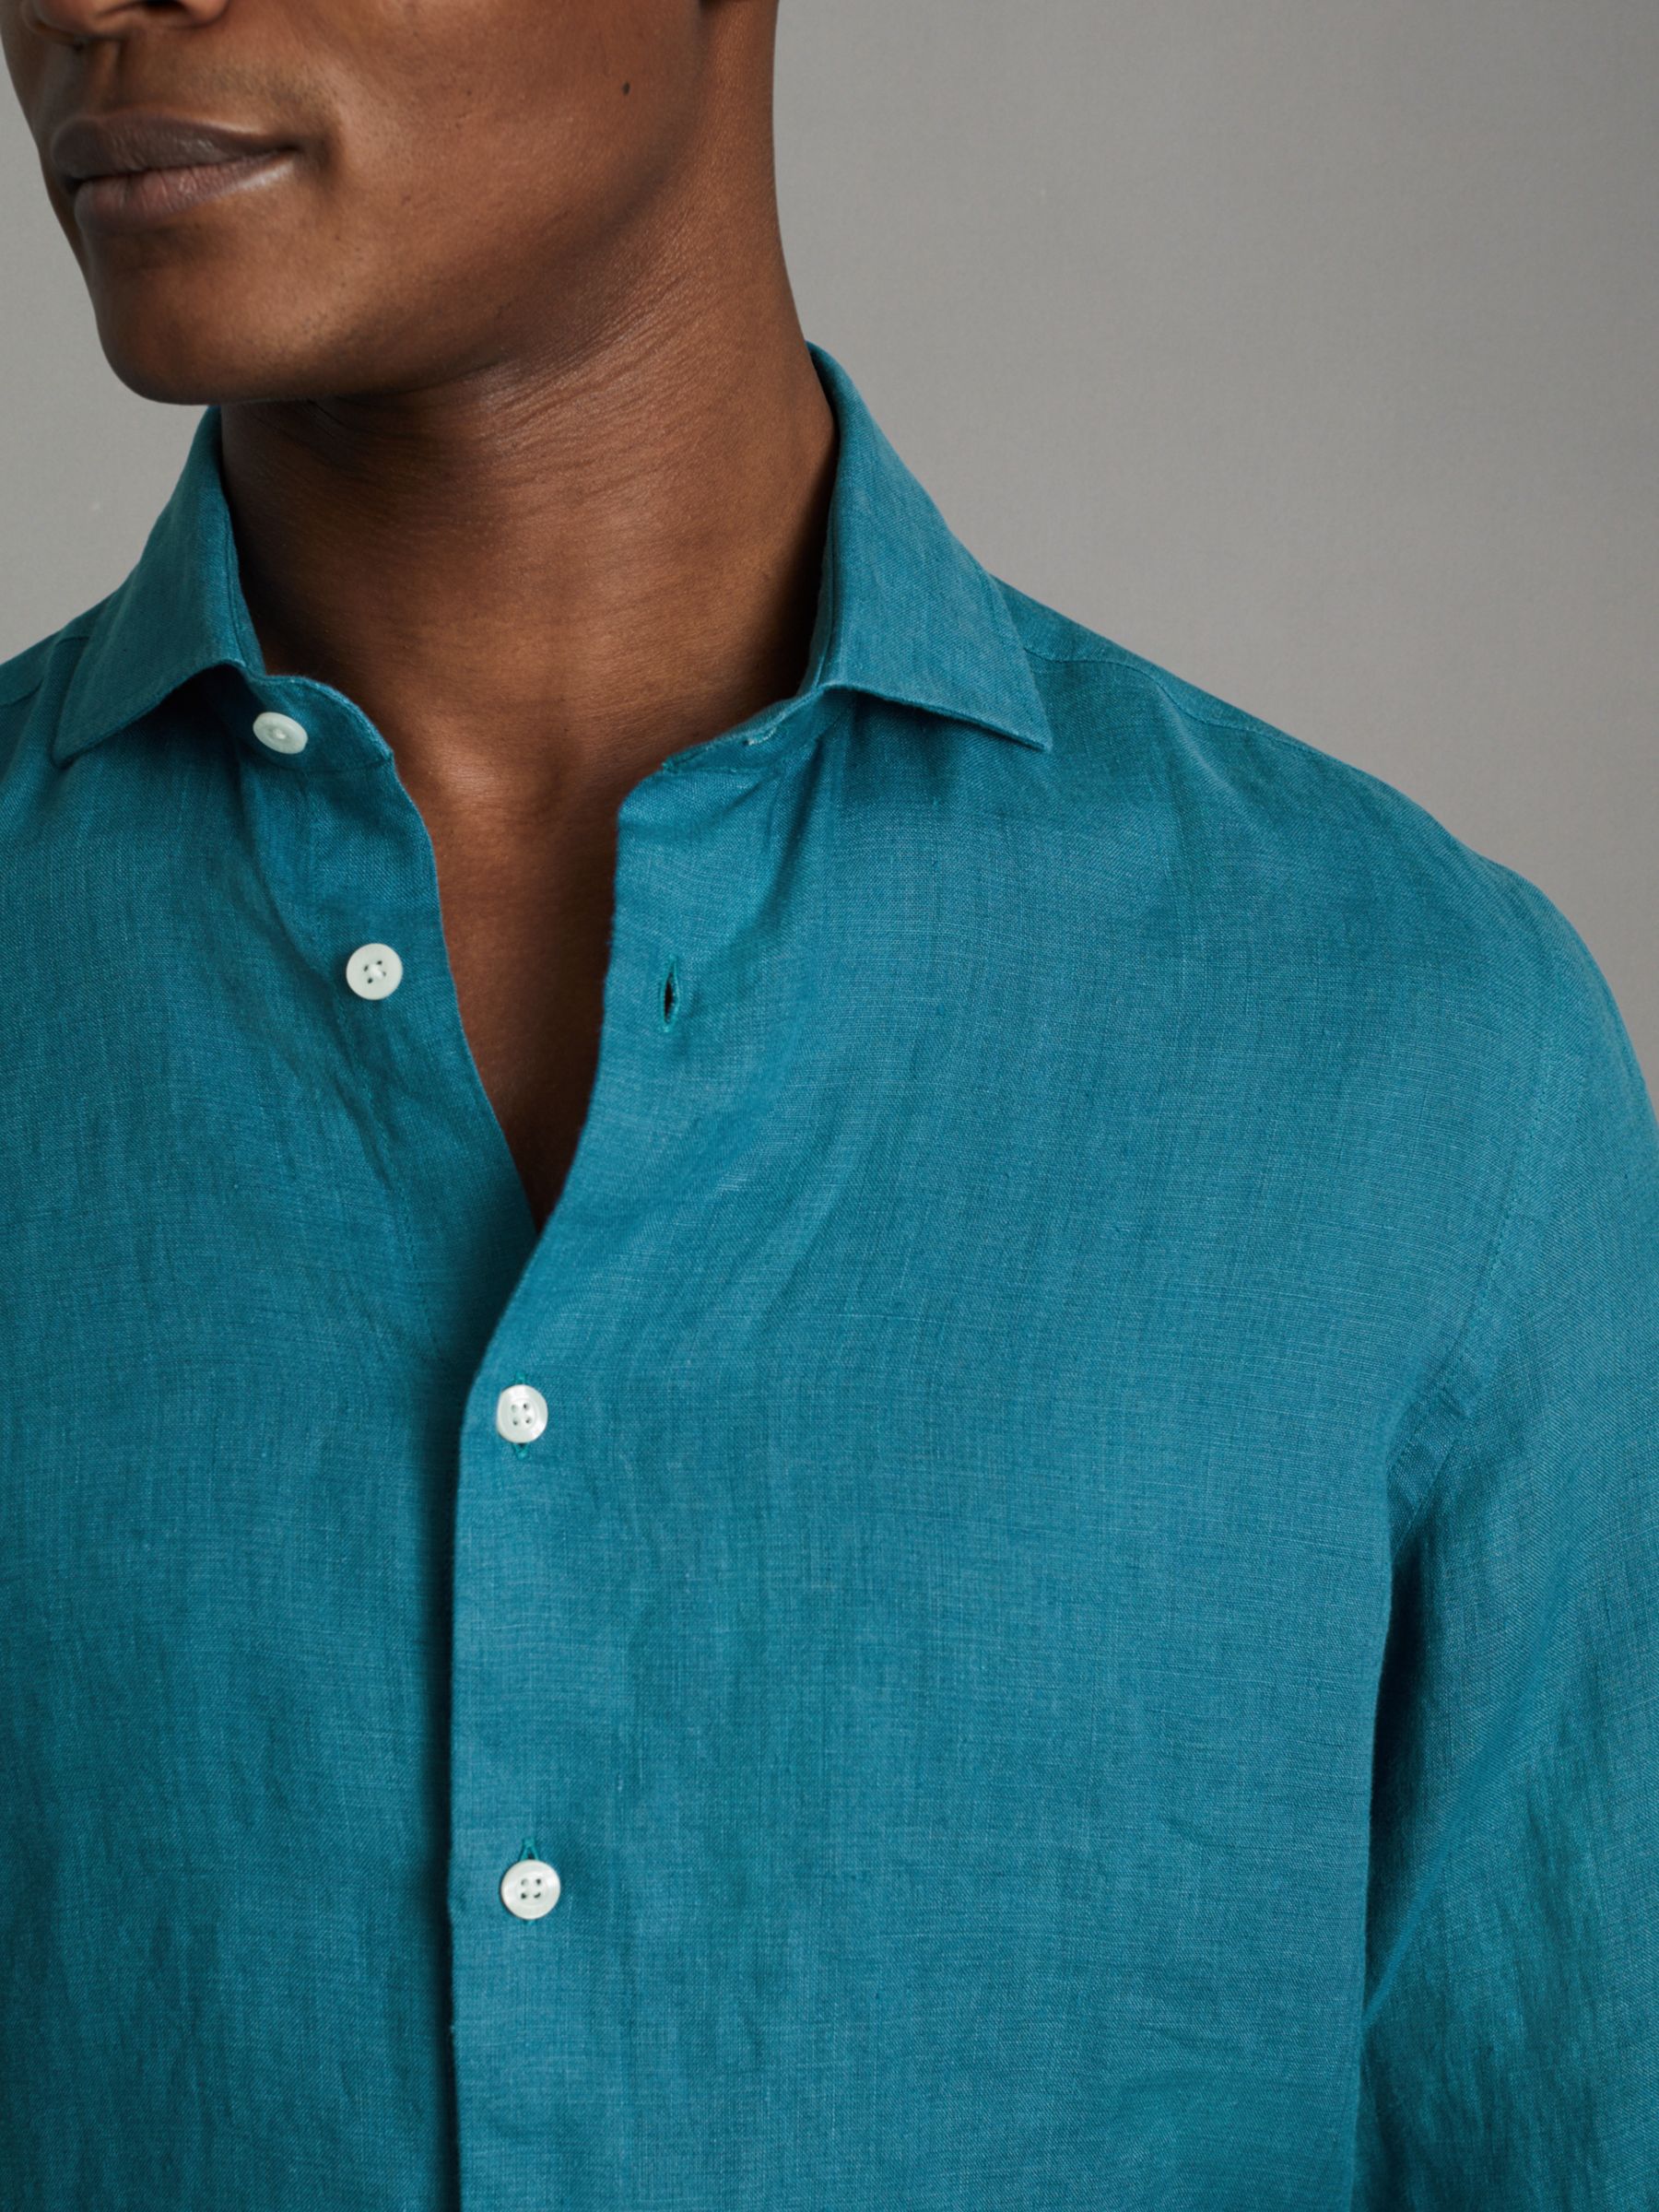 Reiss Ruban Regular Fit Linen Shirt, Turquoise, XS